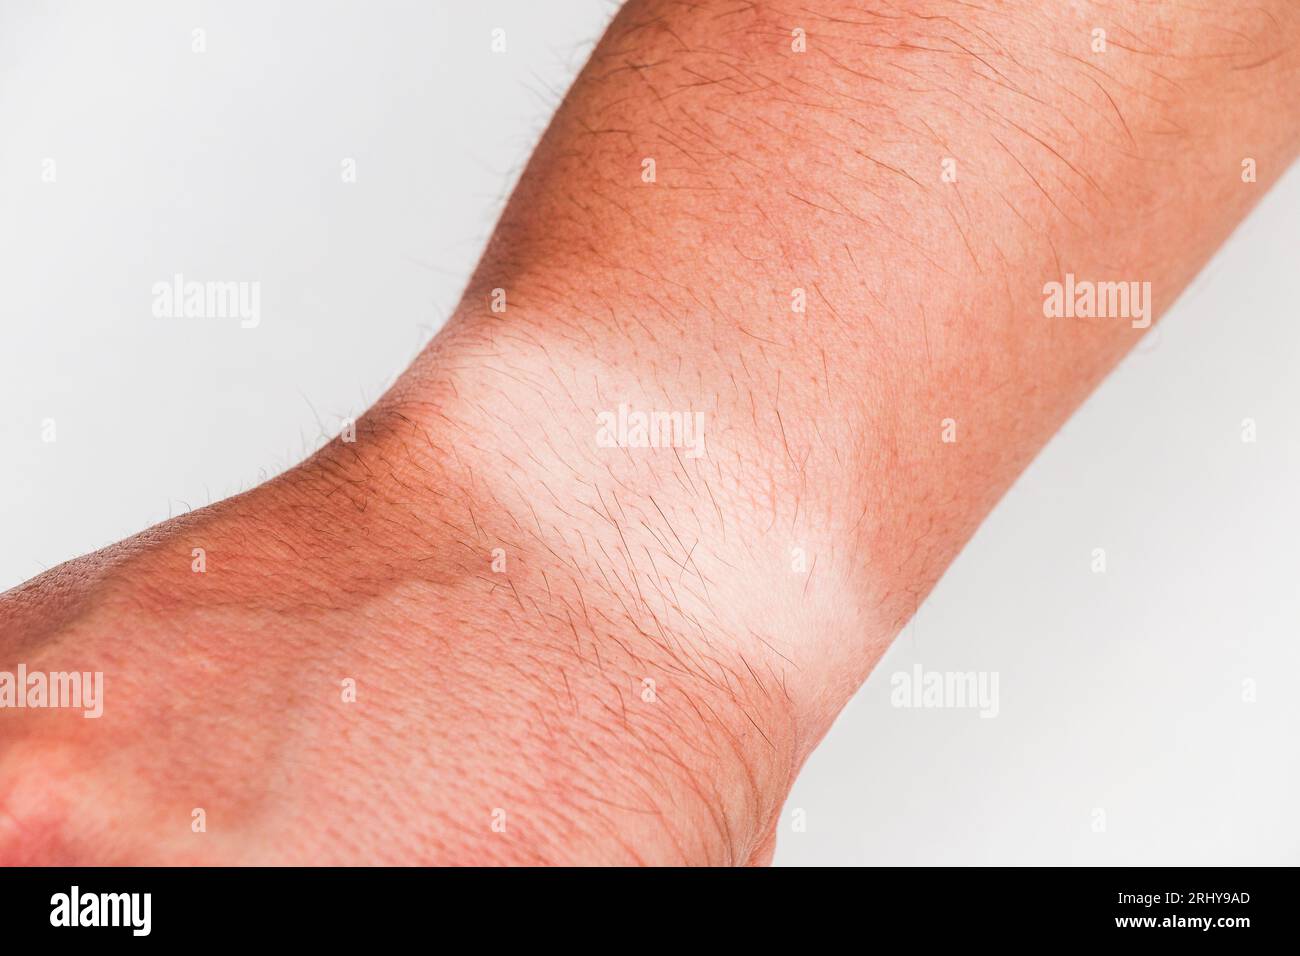 Primo piano del polso di un braccio umano irriconoscibile con un marchio abbronzato o dopo aver preso il sole durante l'estate su sfondo bianco. Foto Stock